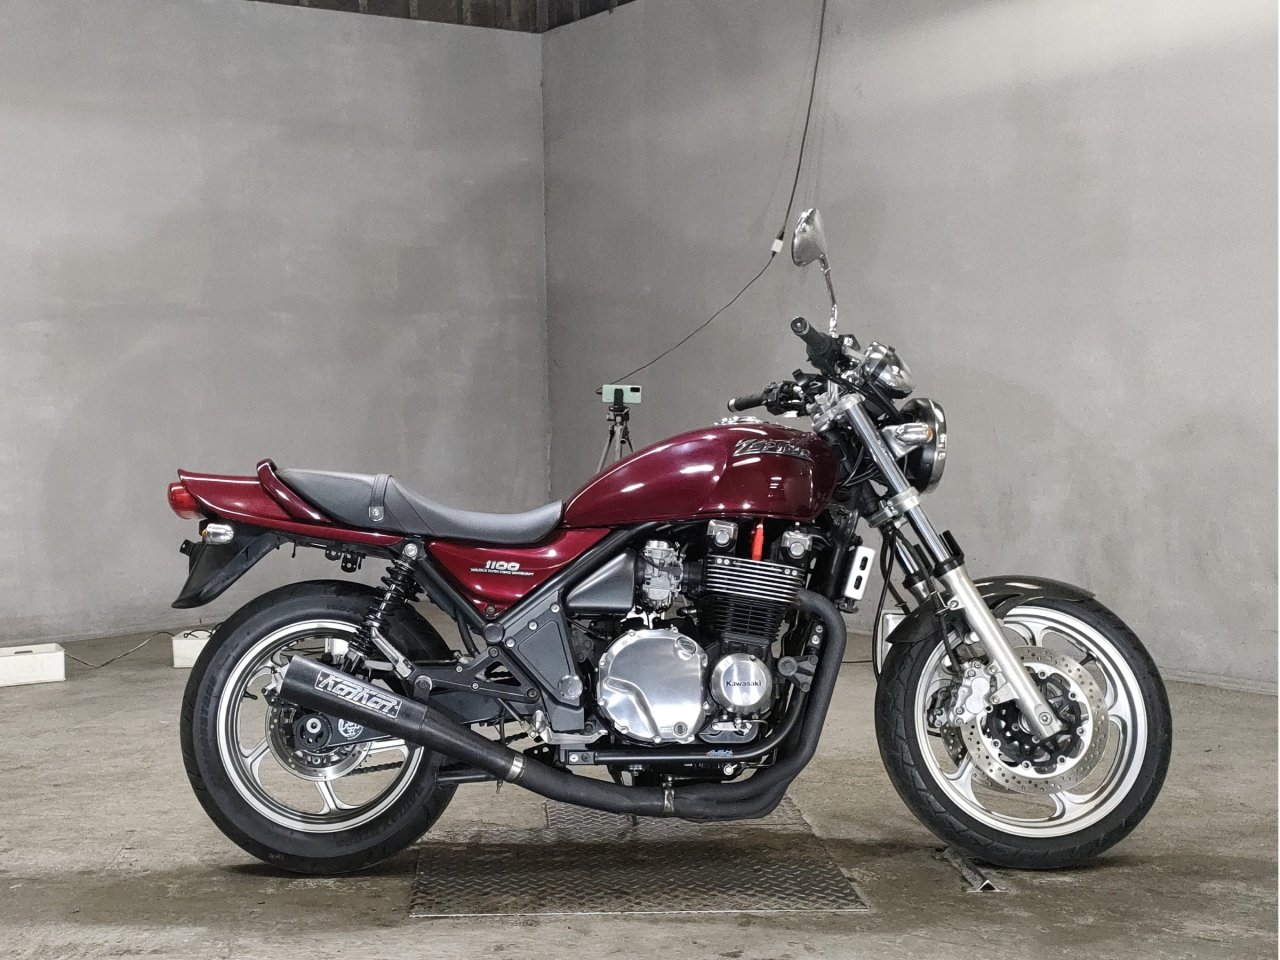 Kawasaki Zephyr 1100 - Adamoto - Motorcycles from Japan